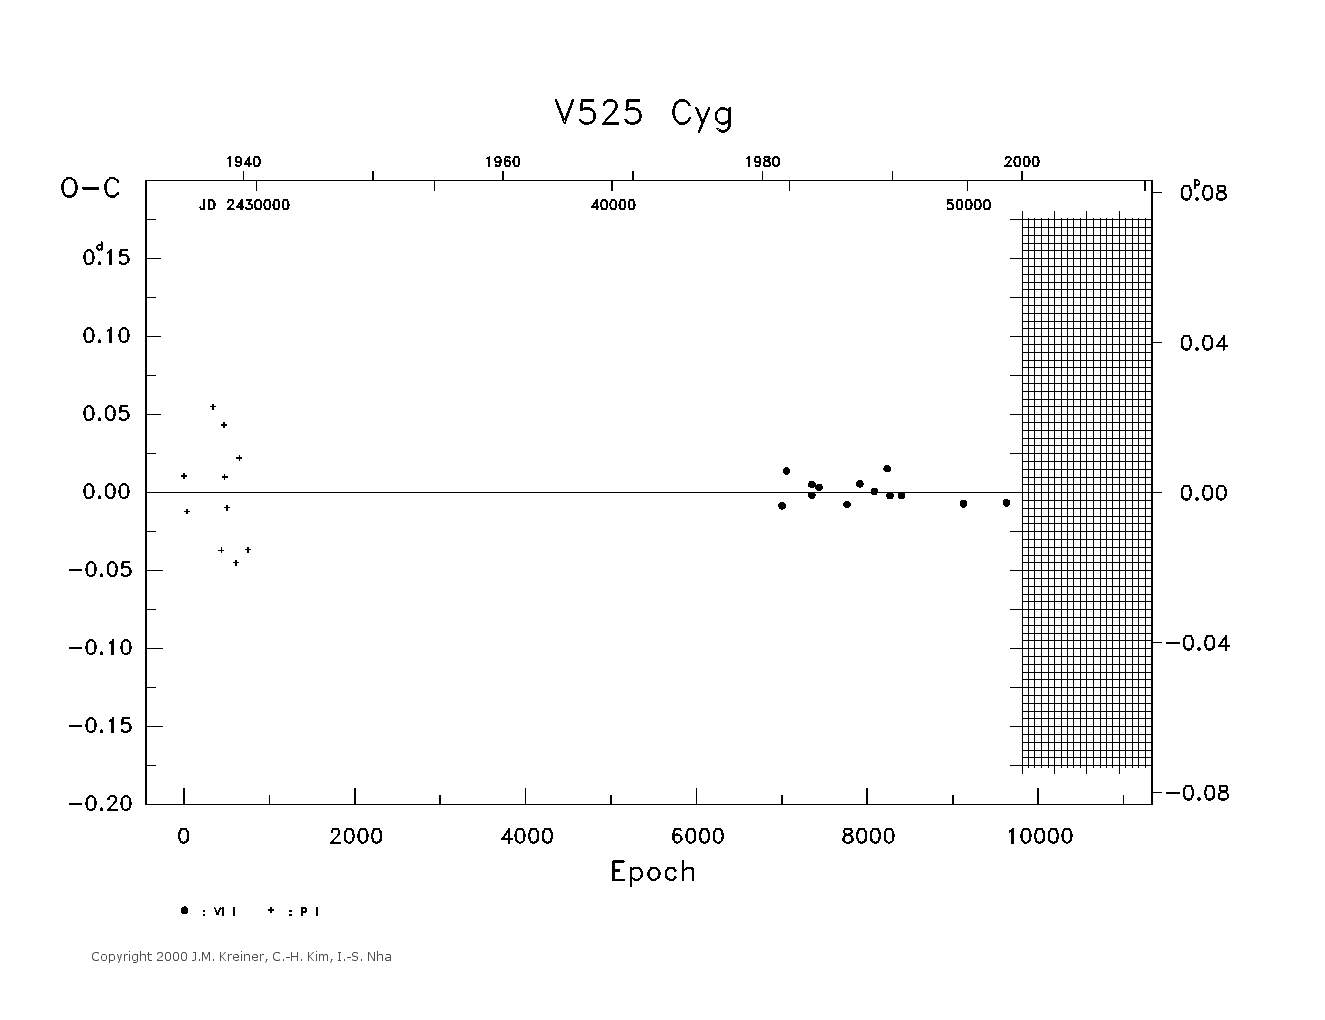 [IMAGE: large V525 CYG O-C diagram]